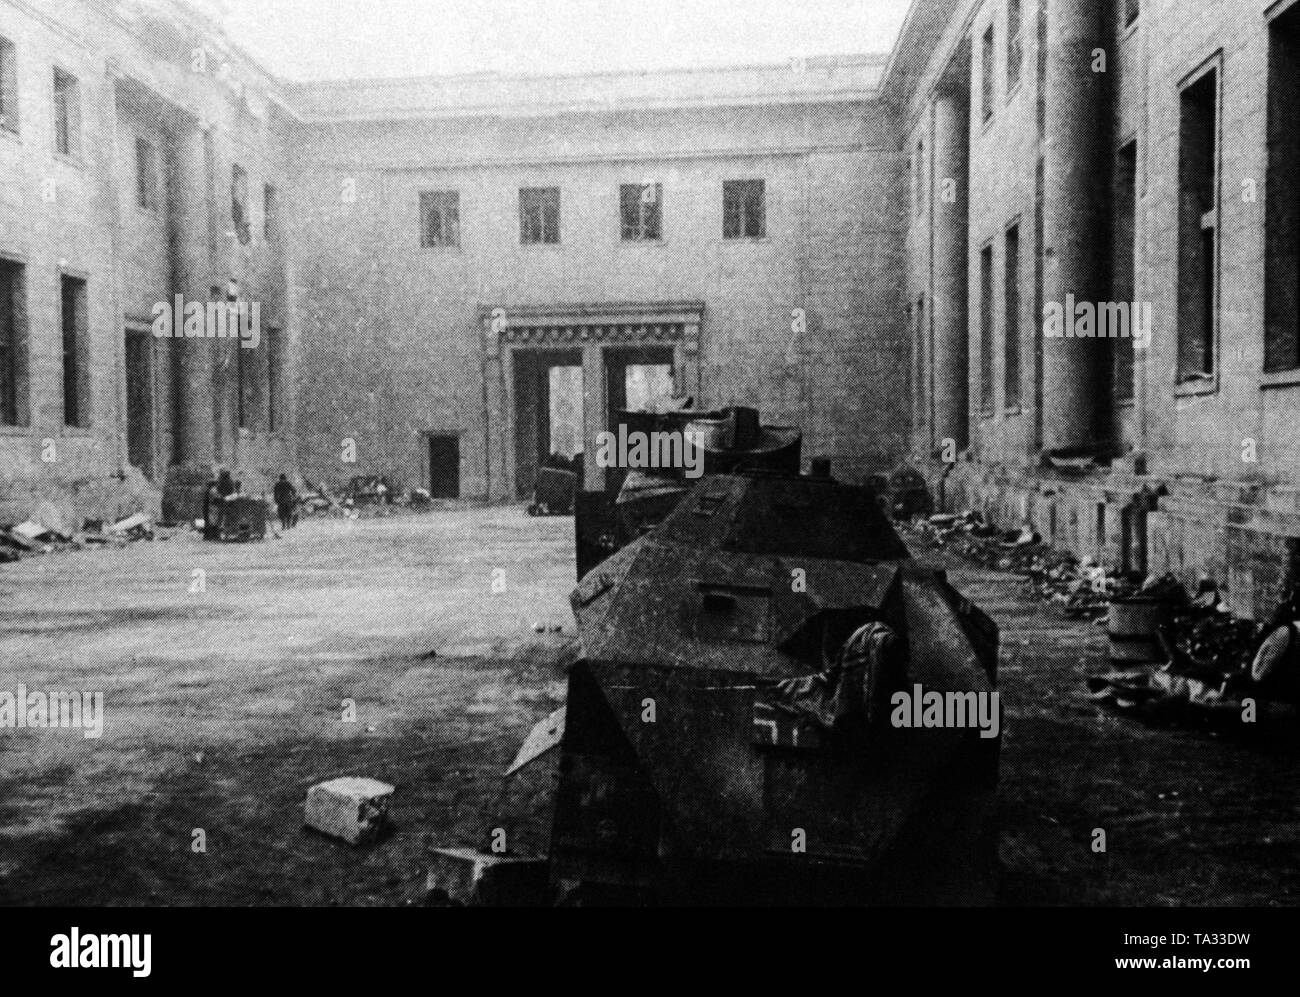 Foto der Haupthof des zerstörten Reichskanzlei unmittelbar nach seiner Gefangennahme durch die sowjetischen Truppen. In den Vordergrund, das Wrack eines abgeschossen Deutschen gepanzerten Wagen, im Hintergrund das Große Portal in der Wilhelmstraße. Stockfoto